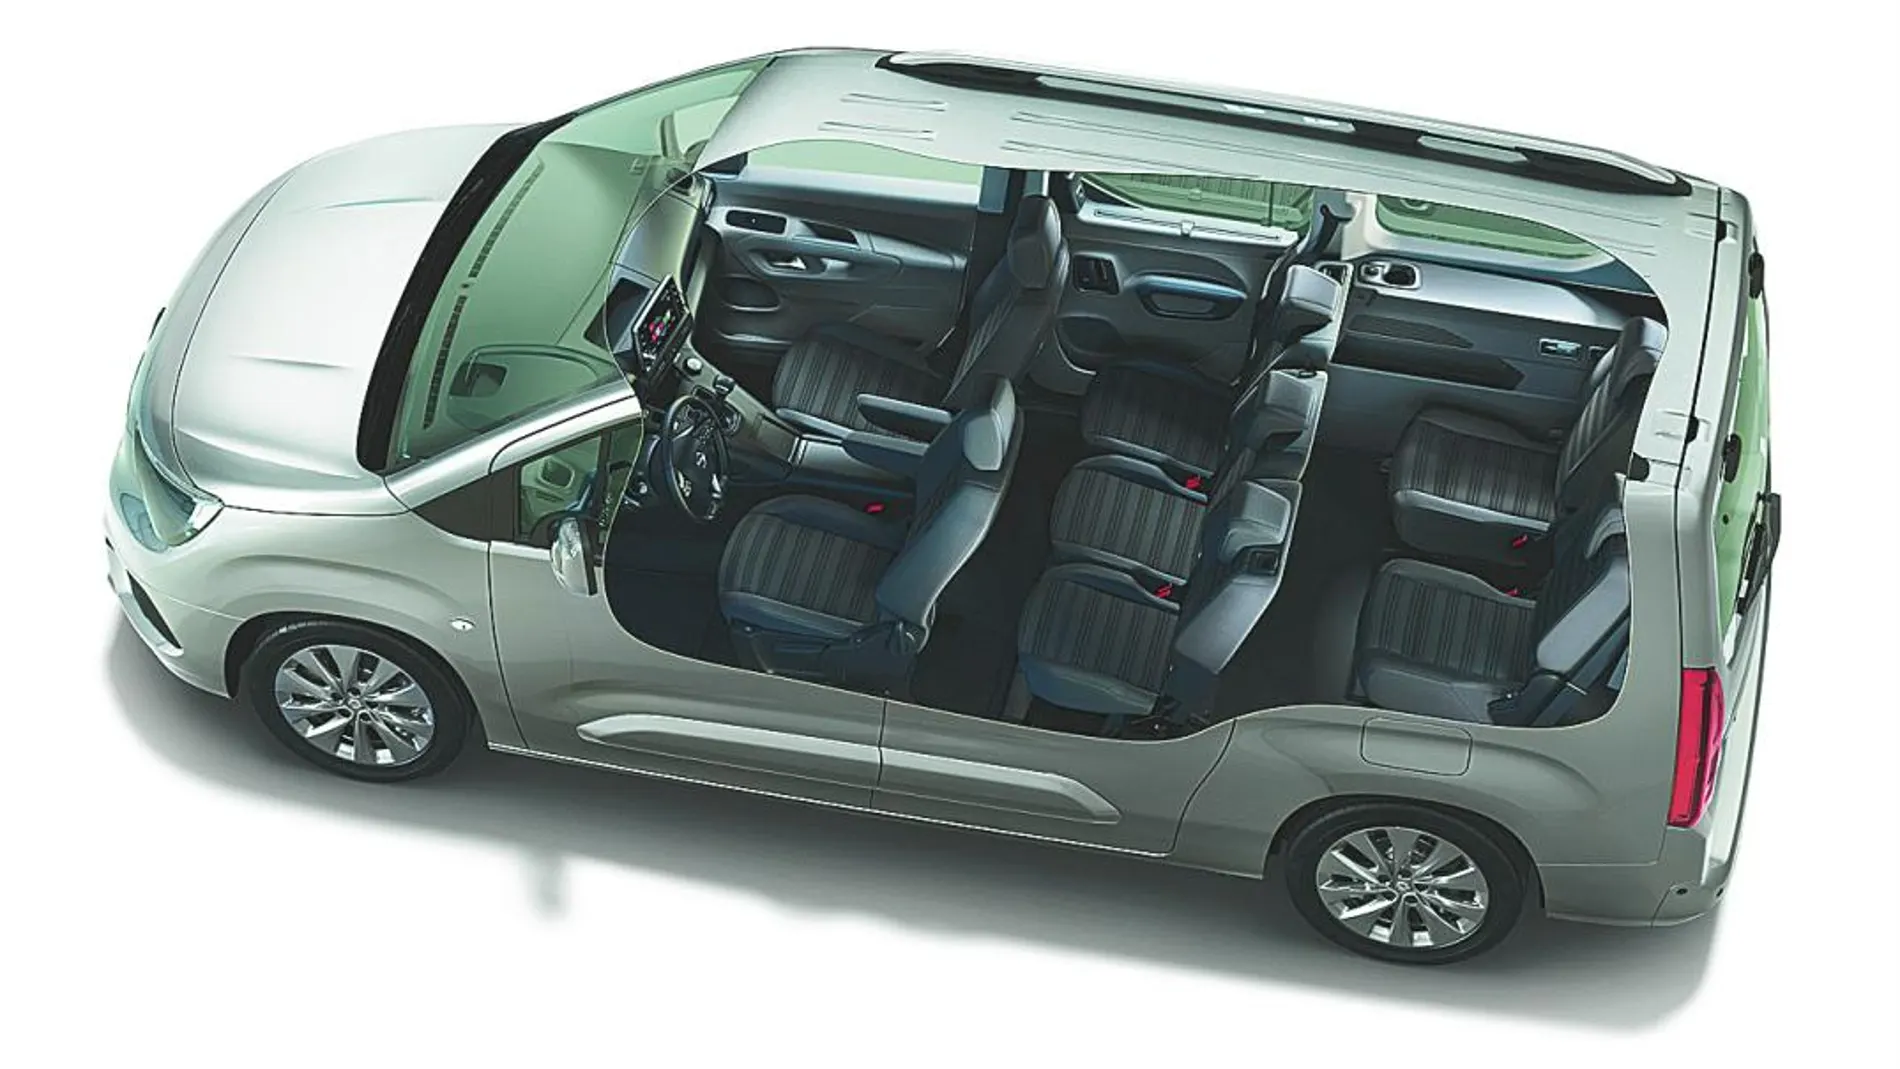 El Opel Combo Life resulta ideal para viajar con niños, ya que presume de un amplio interior, así como un gran maletero y sus tres isofix traseros. Abajo a la izquierda, detalle del interior, caracterizado por el techo panorámico y una pantalla táctil de ocho pulgadas